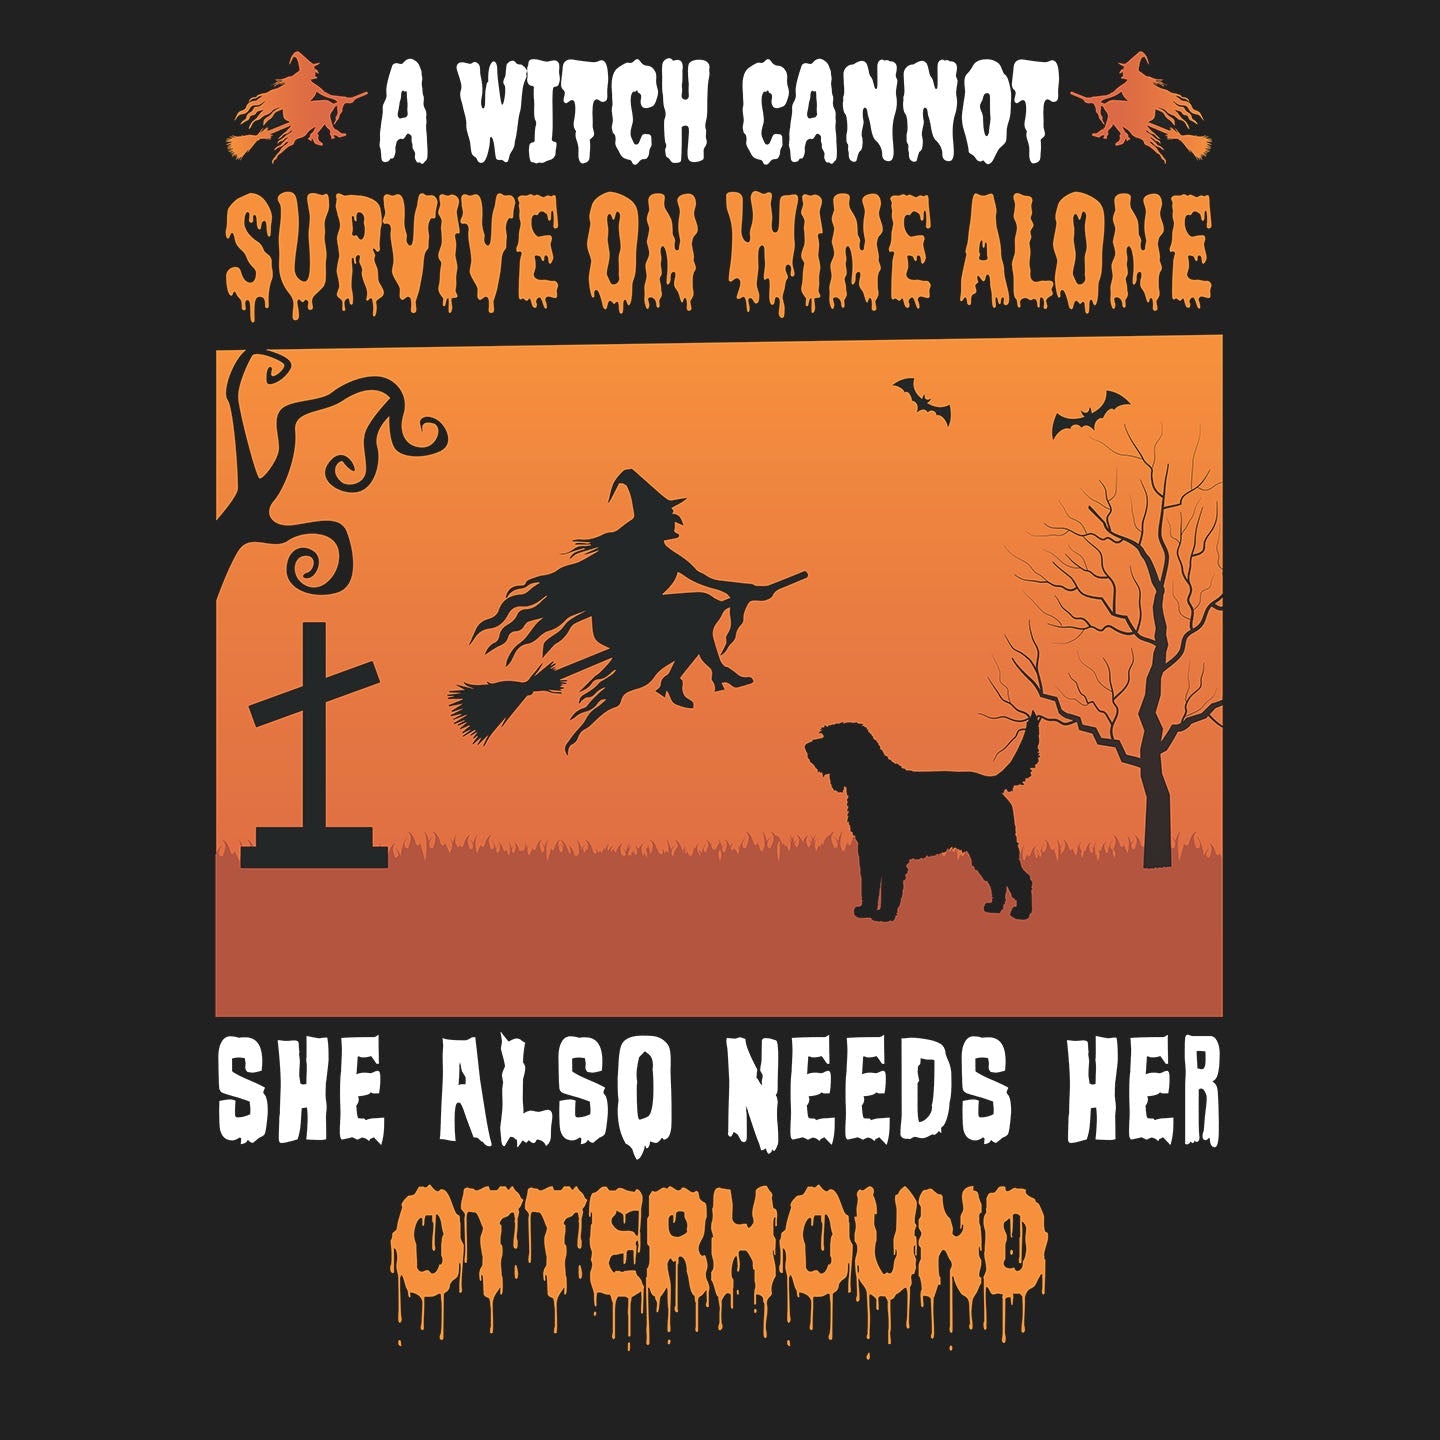 A Witch Needs Her Otterhound - Adult Unisex Crewneck Sweatshirt